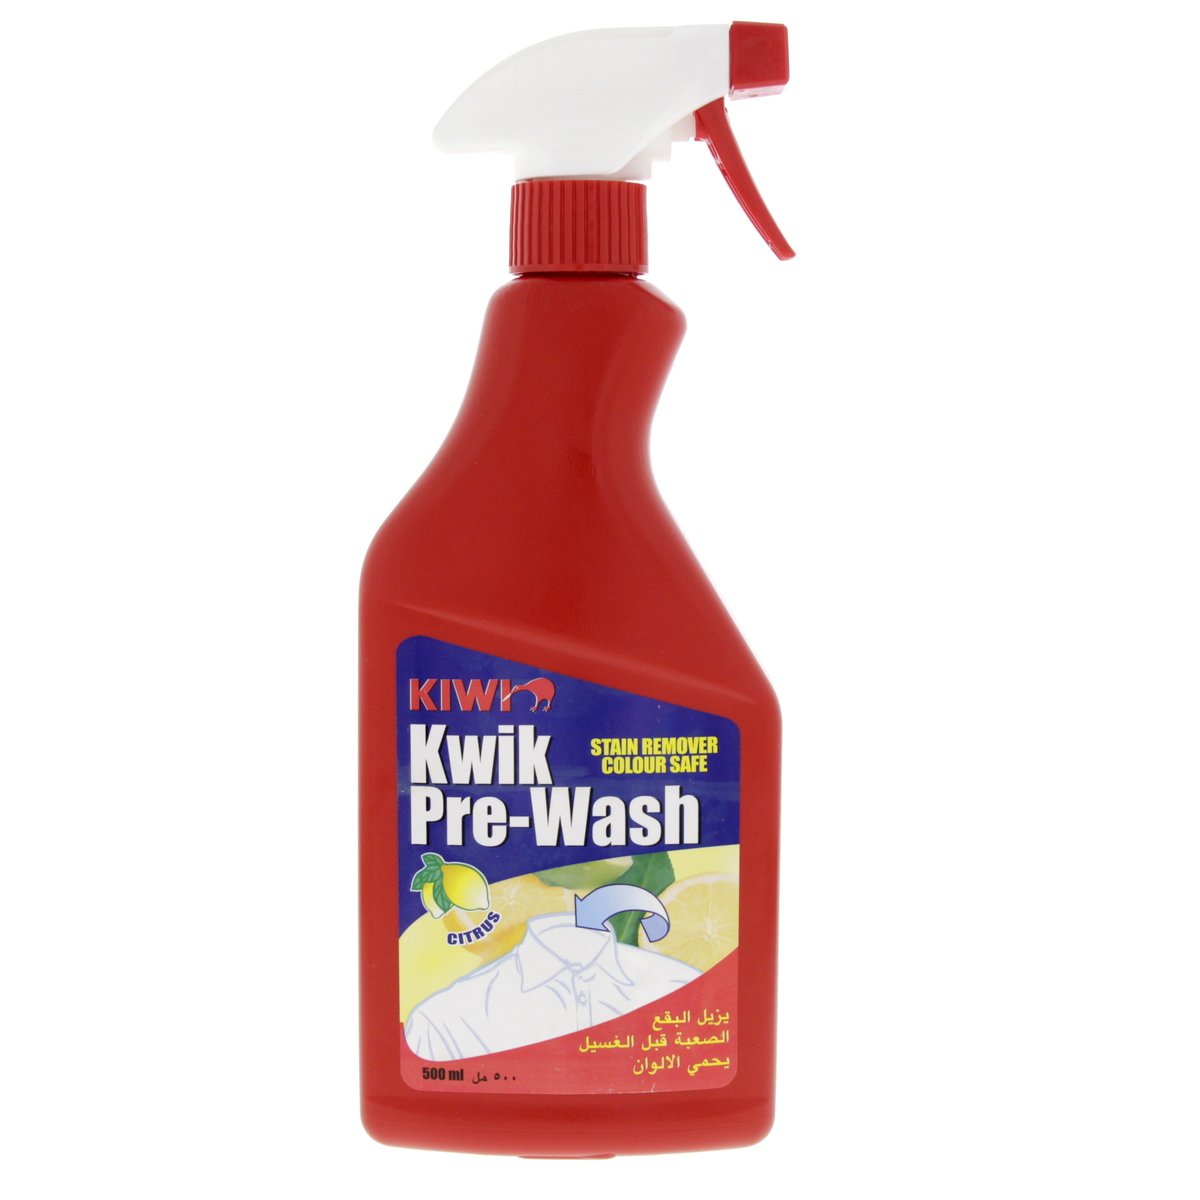 Kiwi Kwik Pre Wash Stain Remover Citrus 500ml